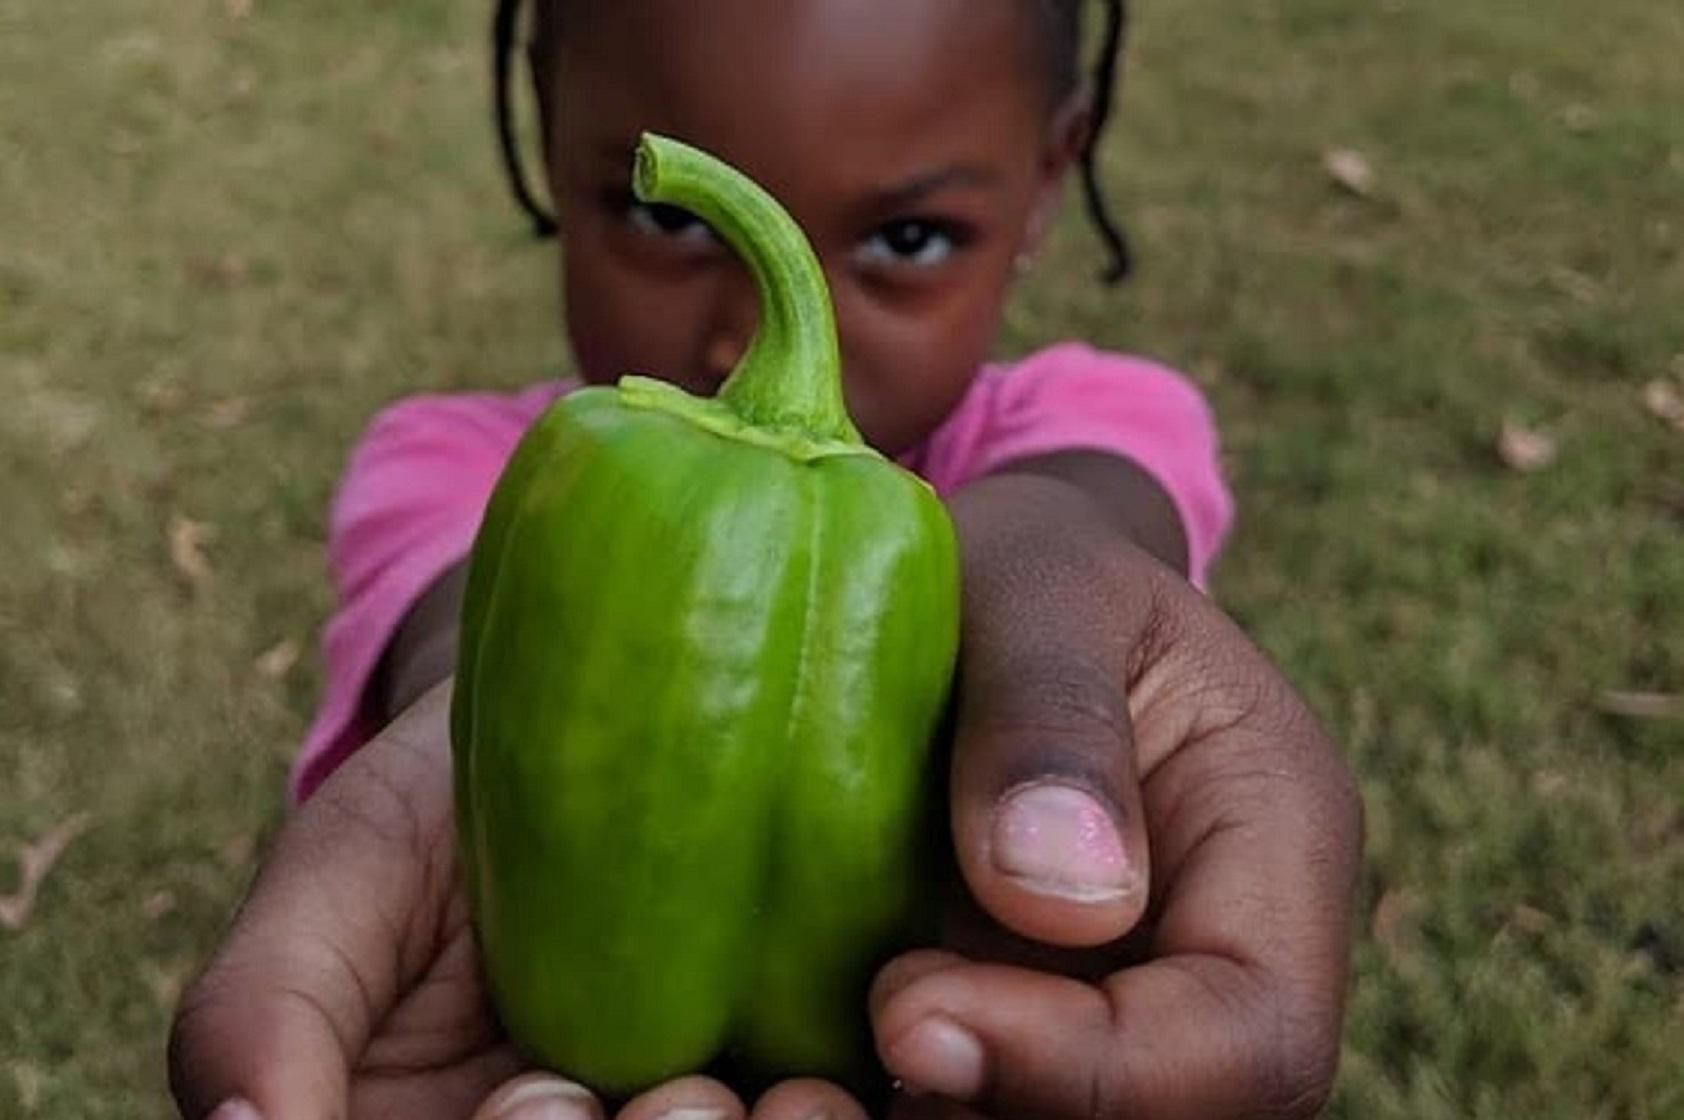 6-летняя девочка стала самым молодым сертифицированным фермером: фото малой профессионалки